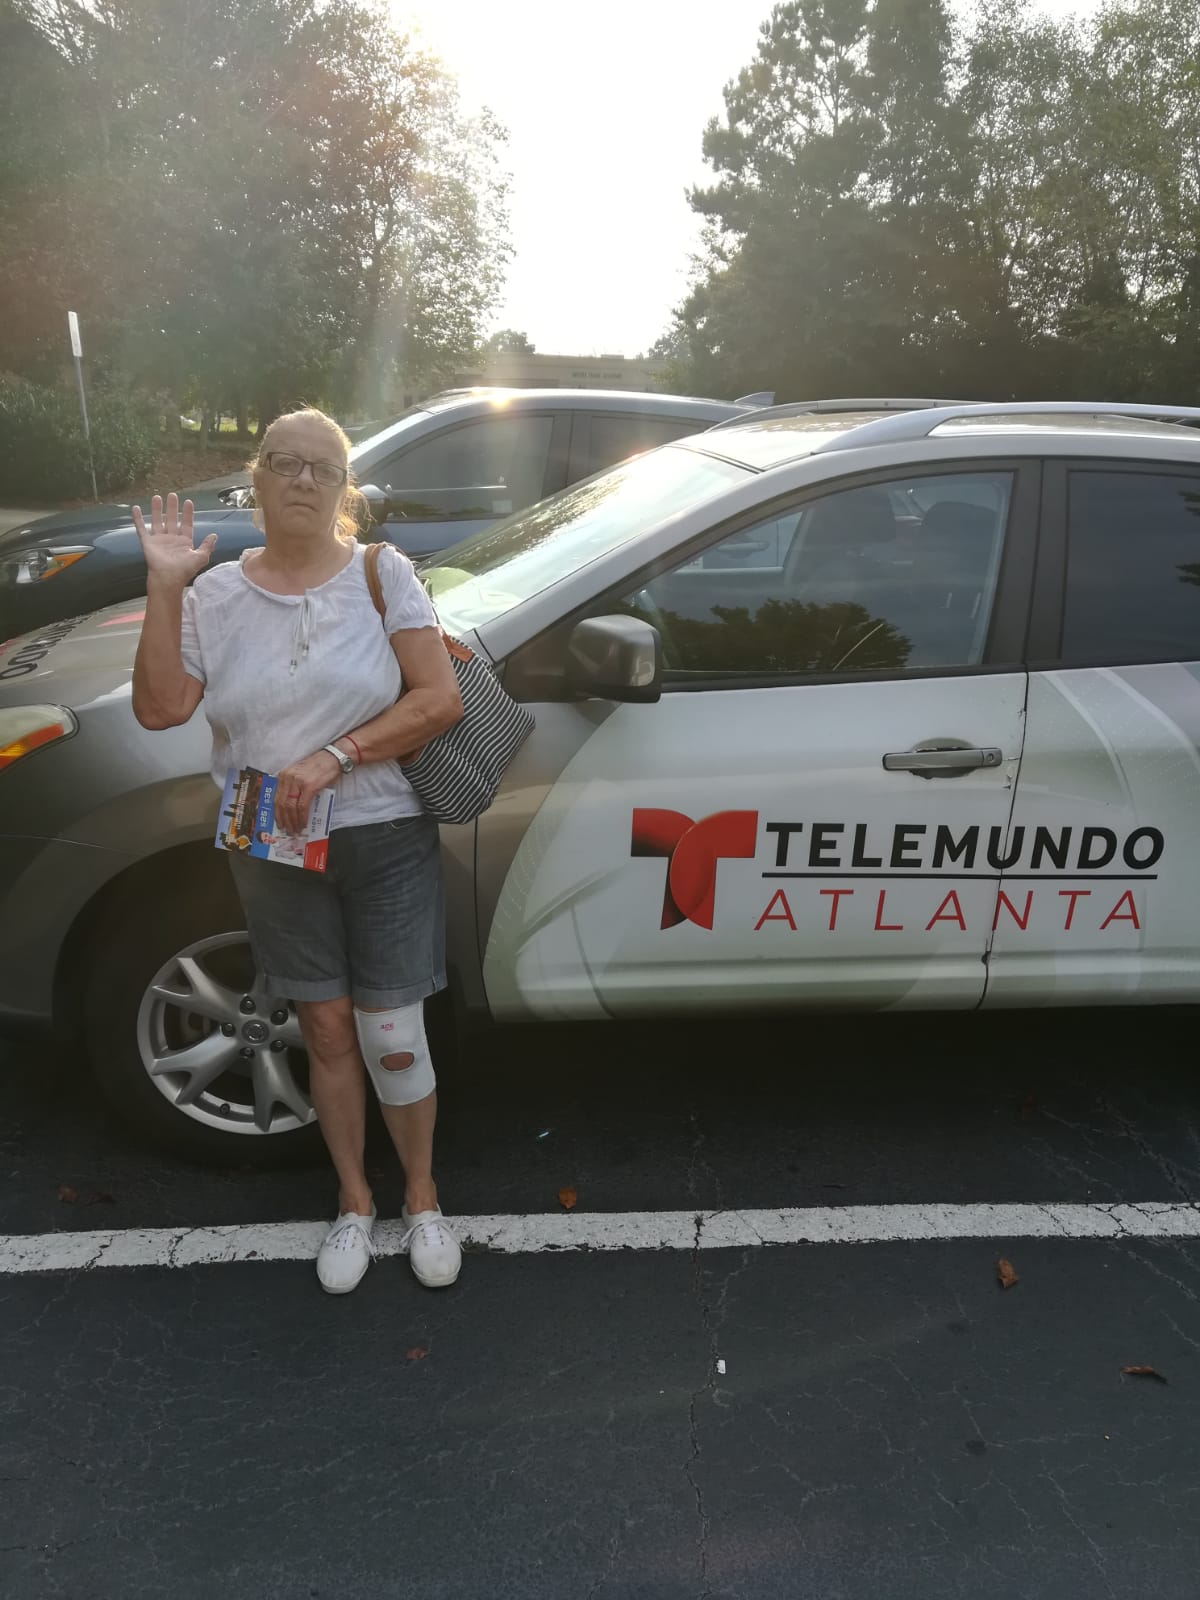 Pirucha at Telemundo Atlanta